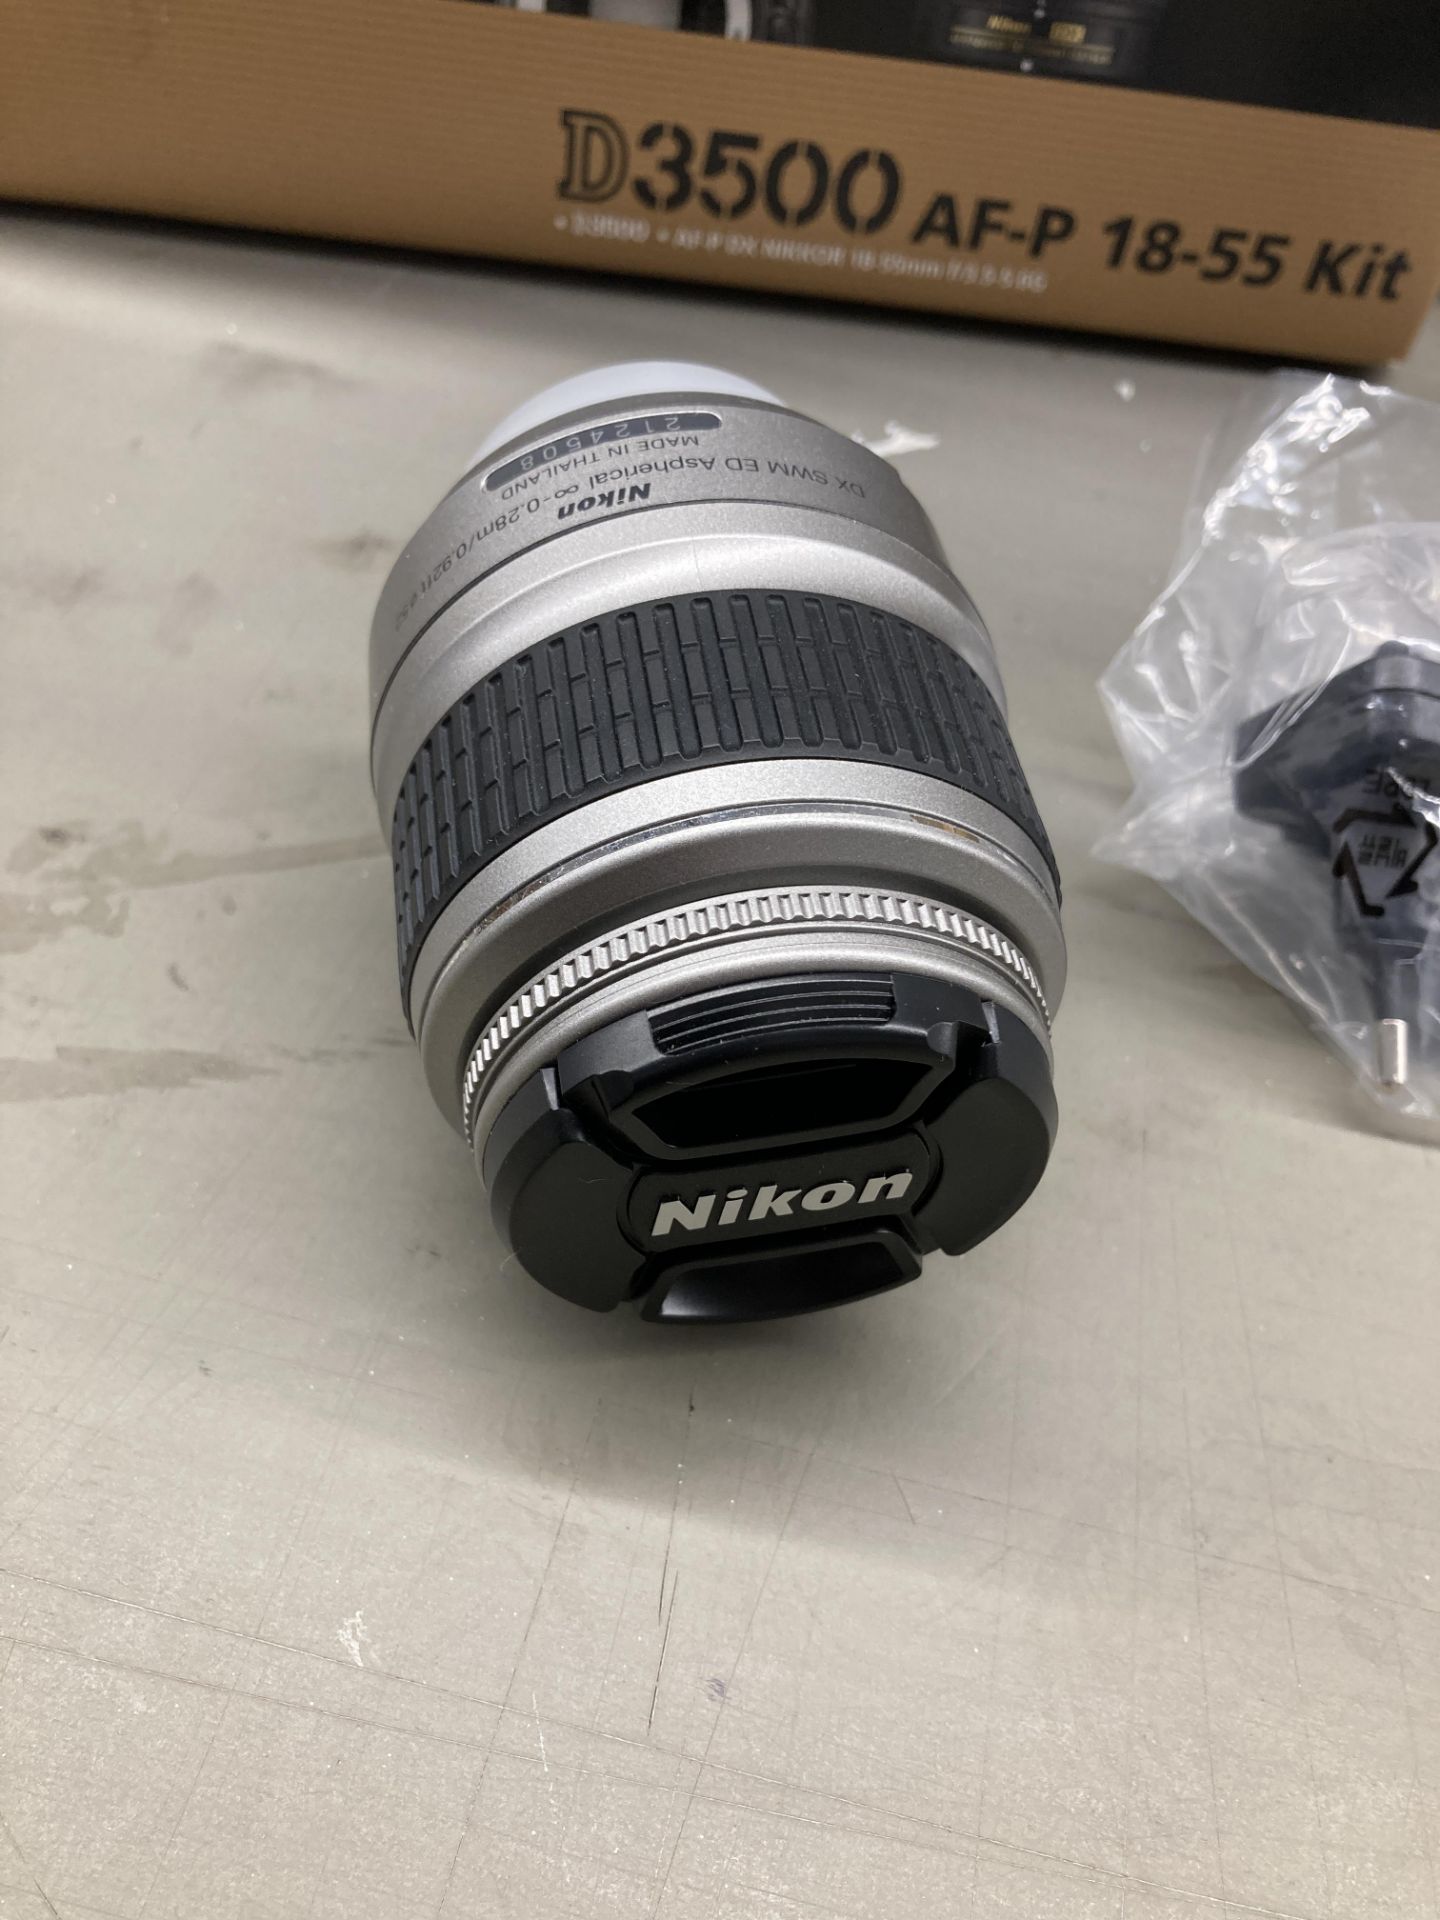 Nikon D3500 AF-P 18-55 DSLR camera kit with Nikon D3500 DSLR camera and lens - Image 13 of 29